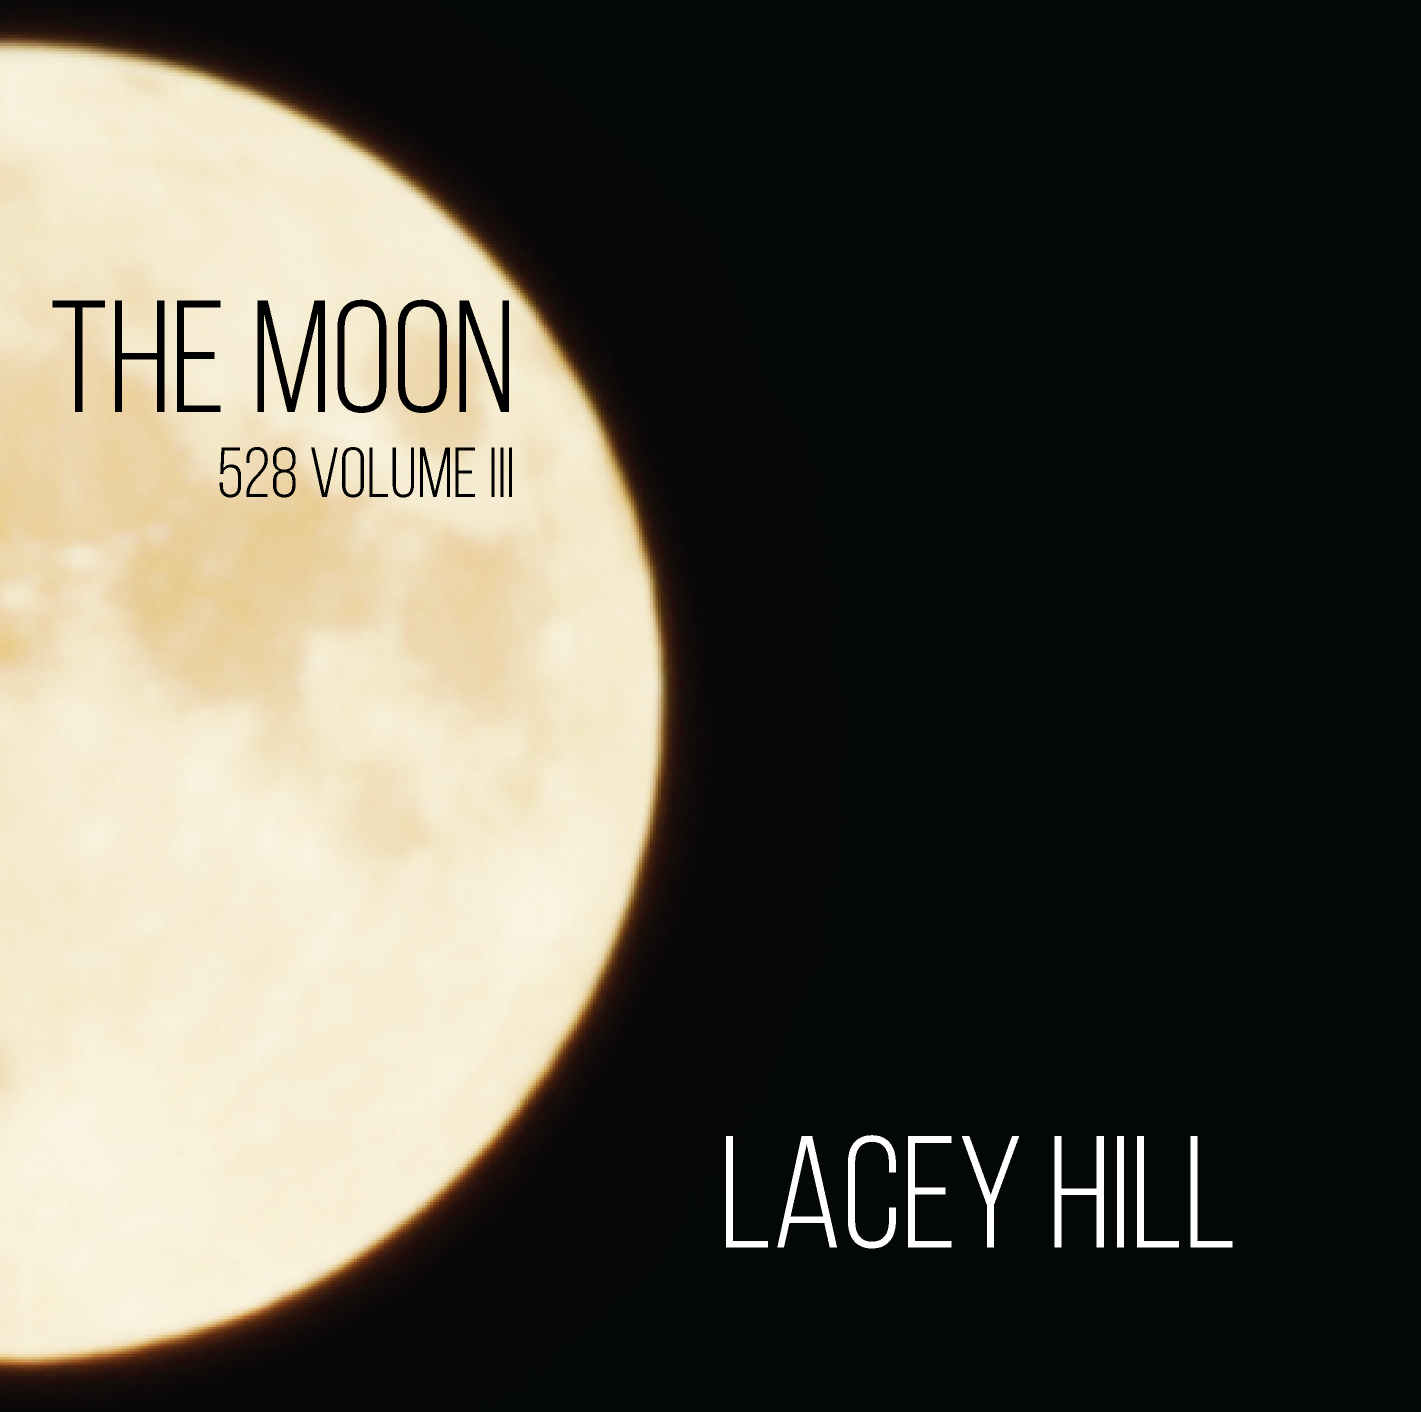 The Moon (528 Volume III) Album Cover